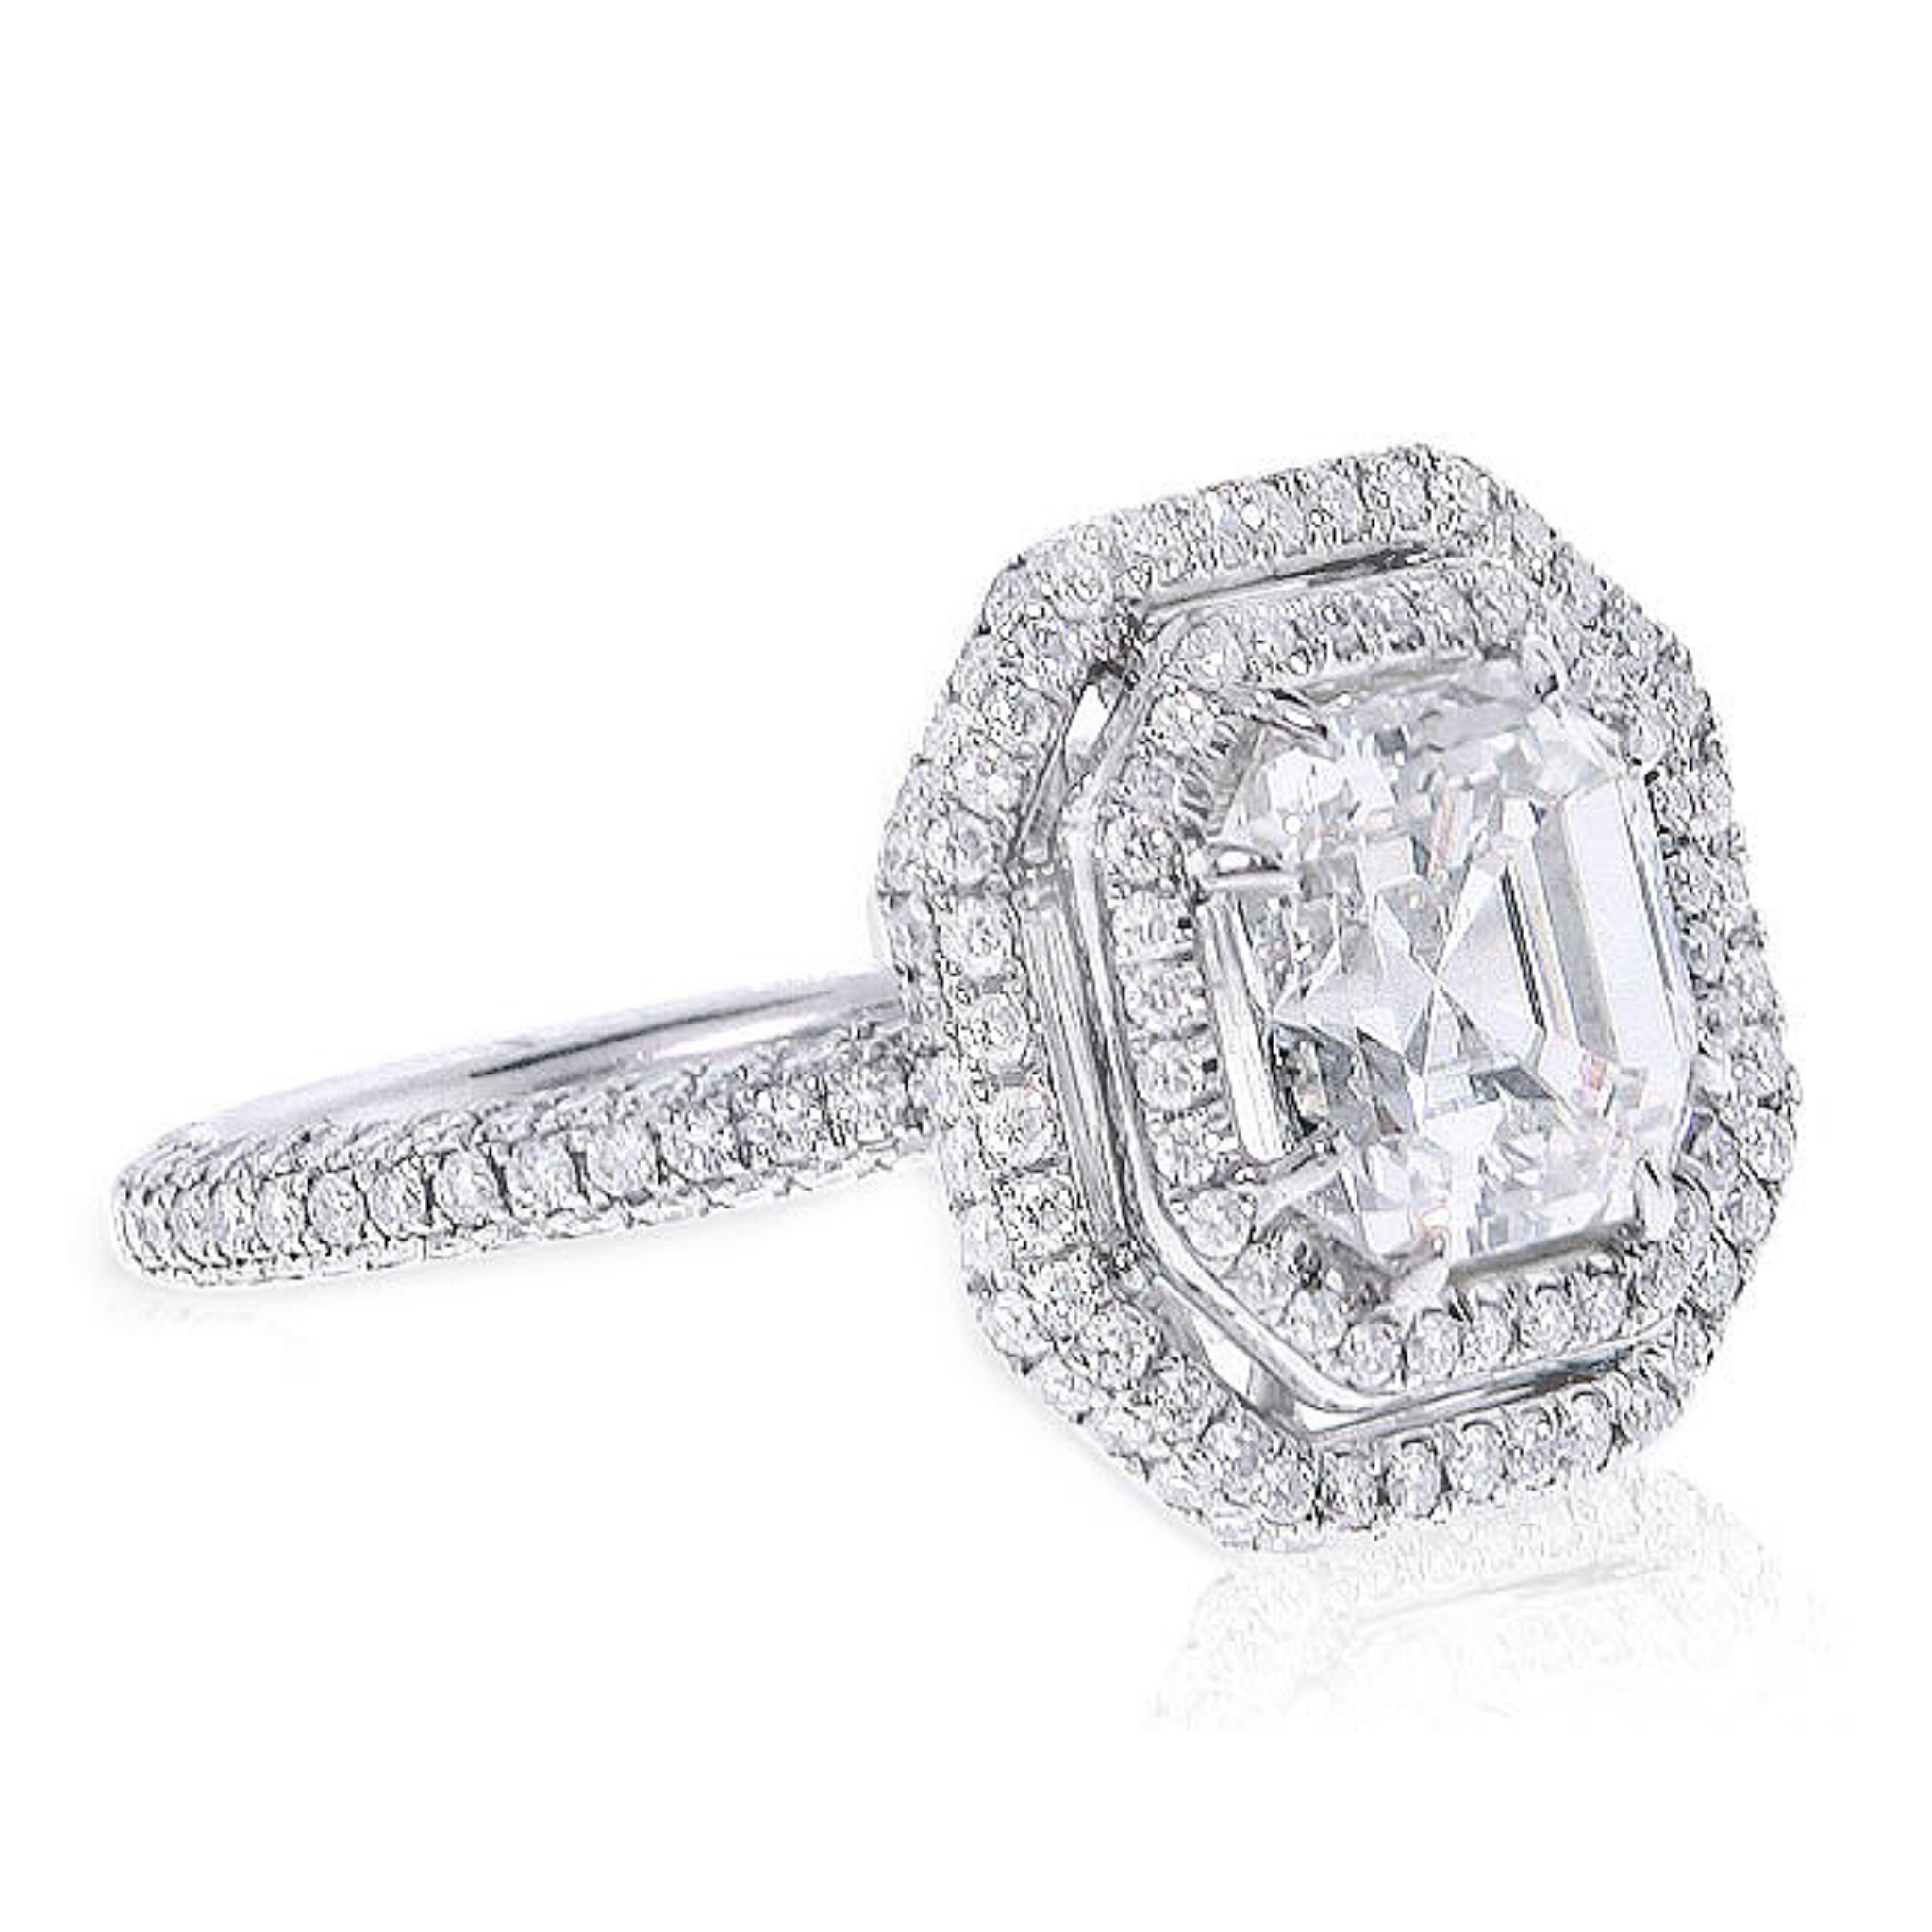 3.01ct Asscher Cut Diamond Ring.jpg